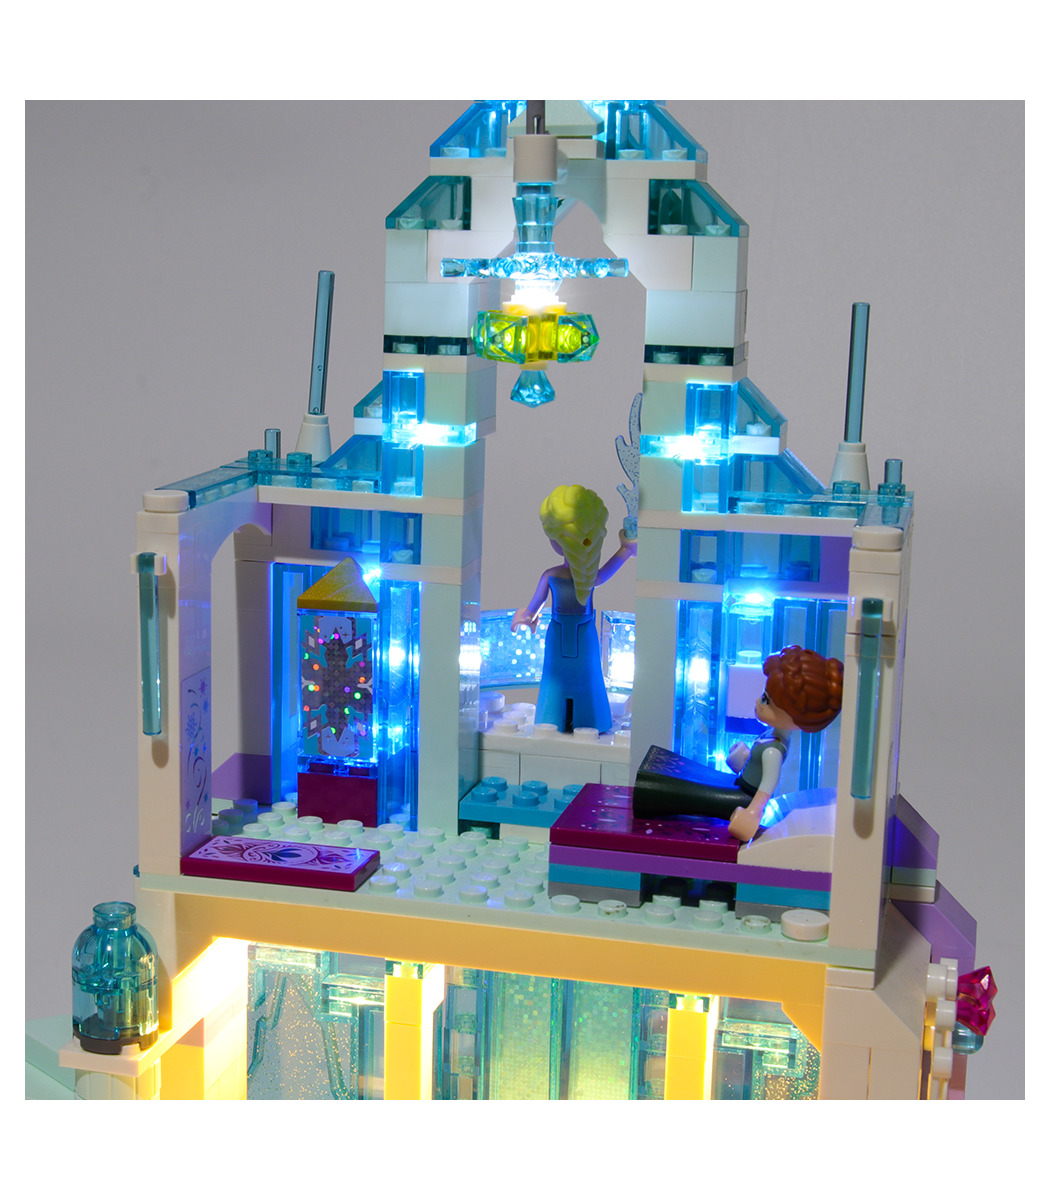 の光キットの曲の魔法の氷の宮殿led照明セット Buildingtoystore Com